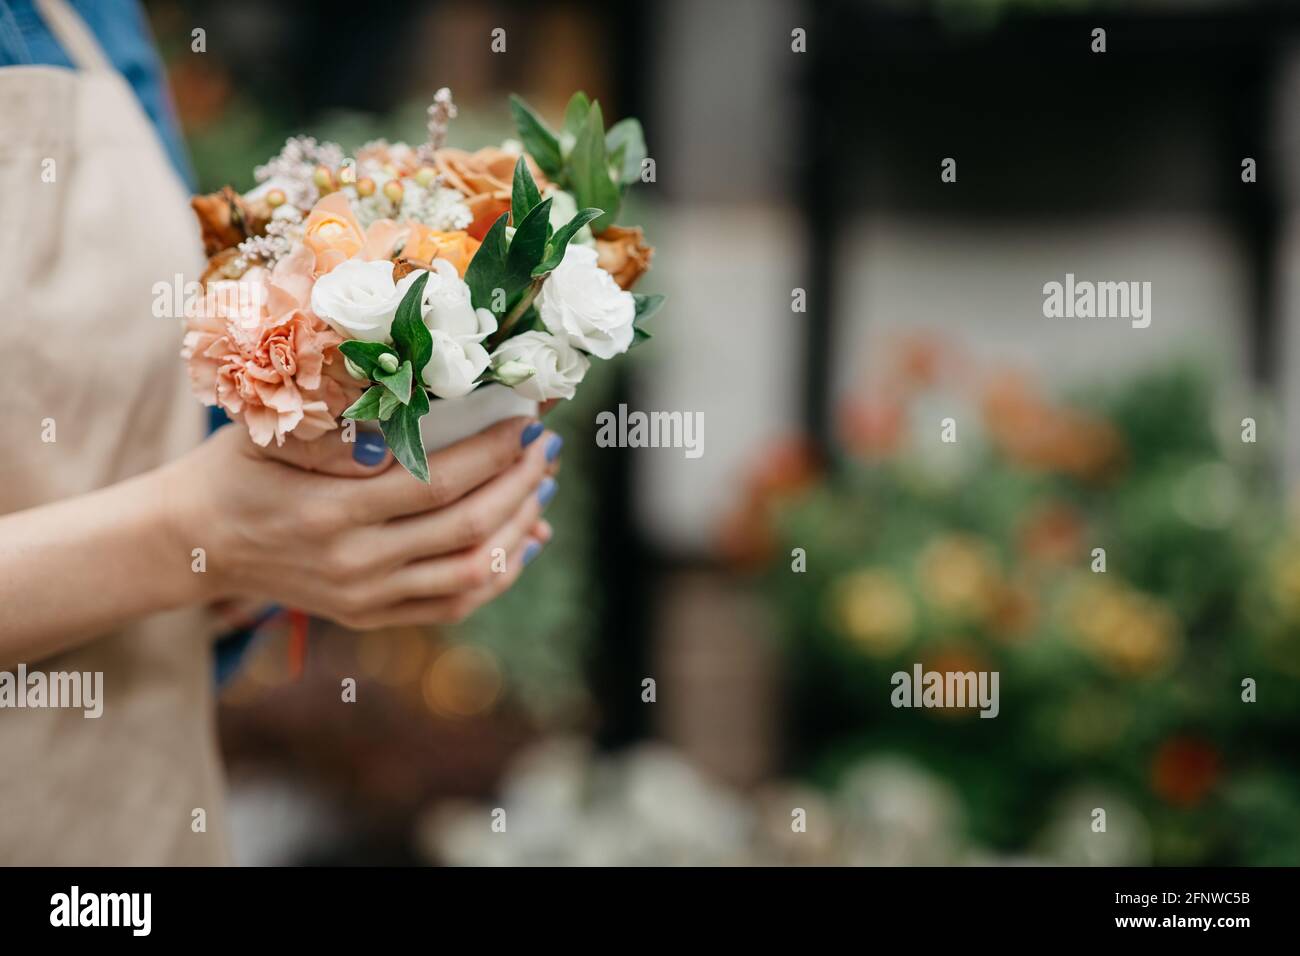 Créer une belle composition florale en magasin pour des félicitations et des cadeaux Banque D'Images